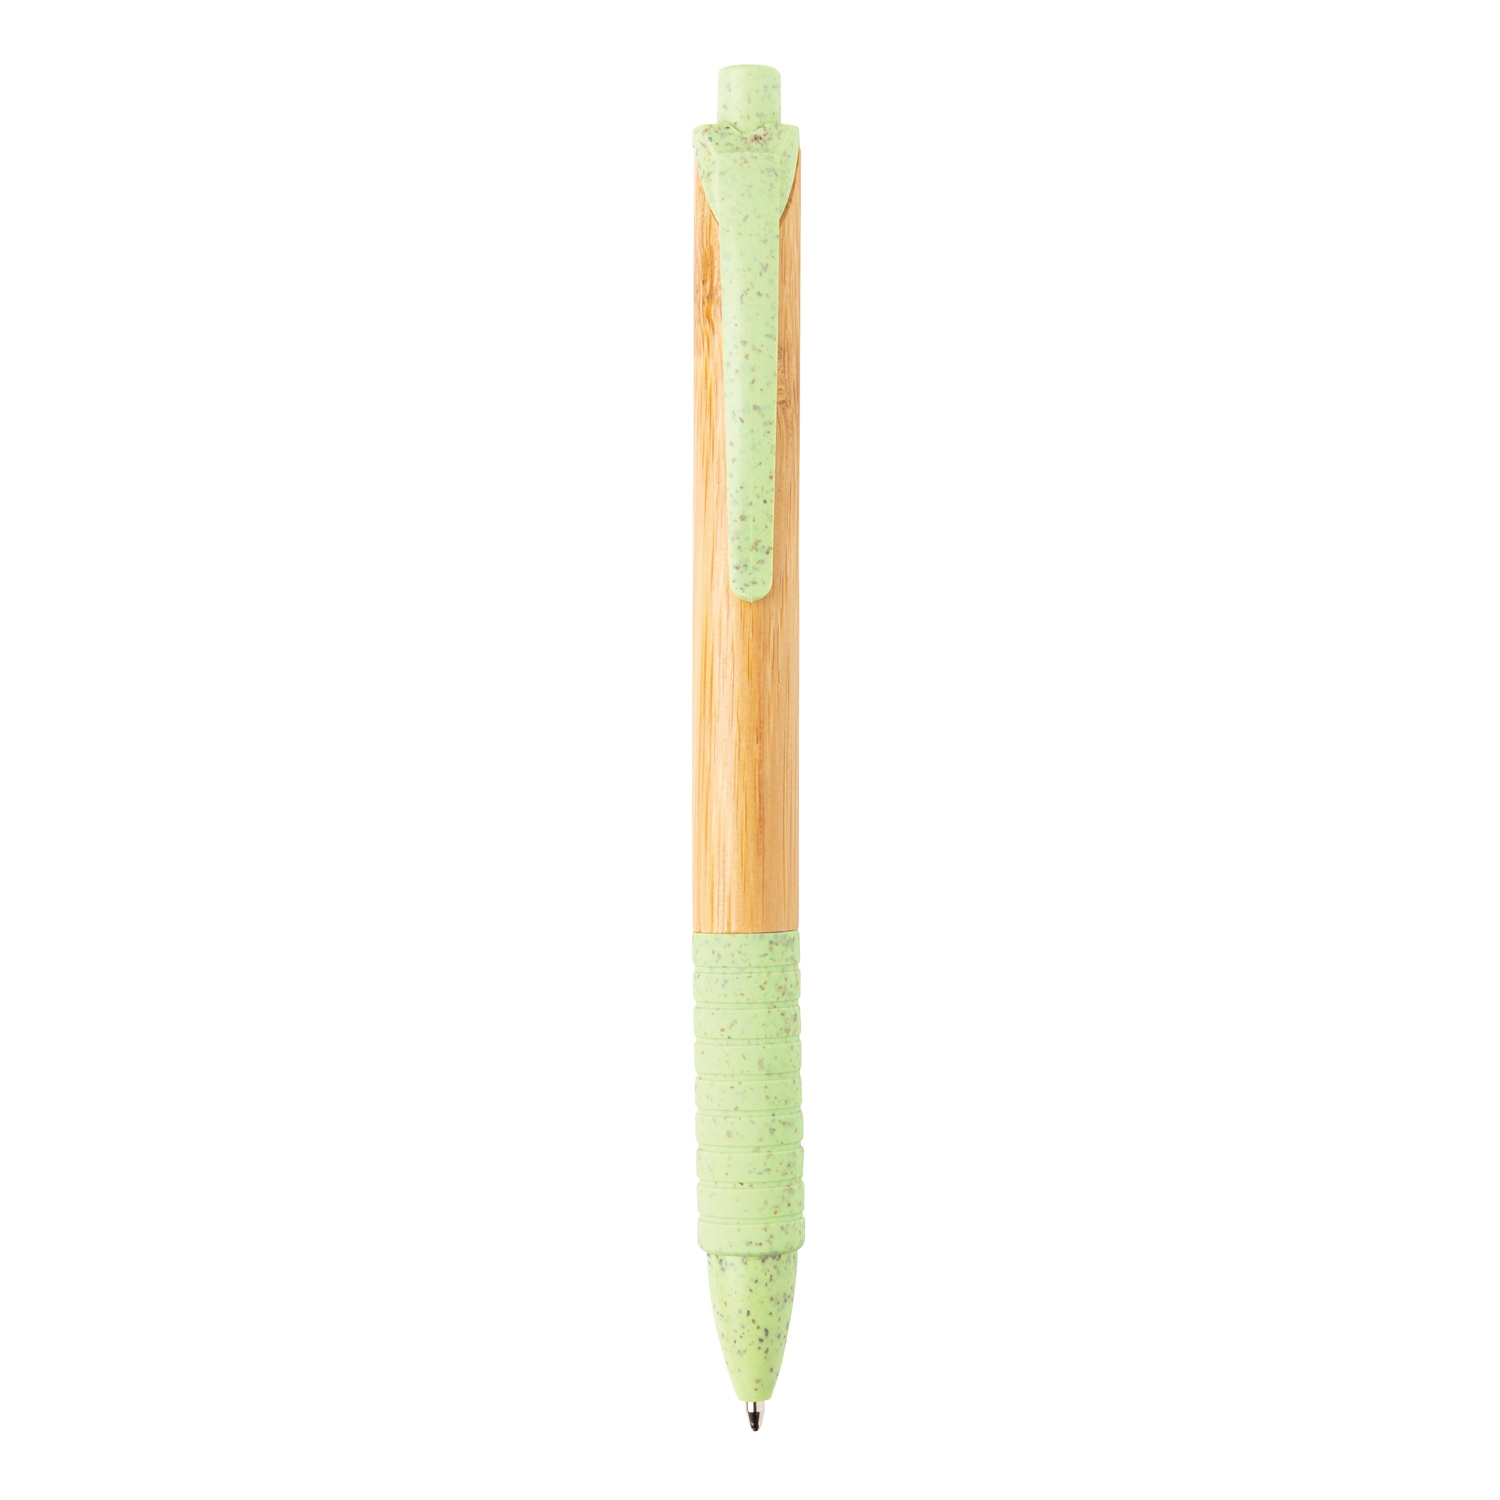 Ручка из бамбука и пшеничной соломы, зеленый, бамбук; волокно пшеничной соломы